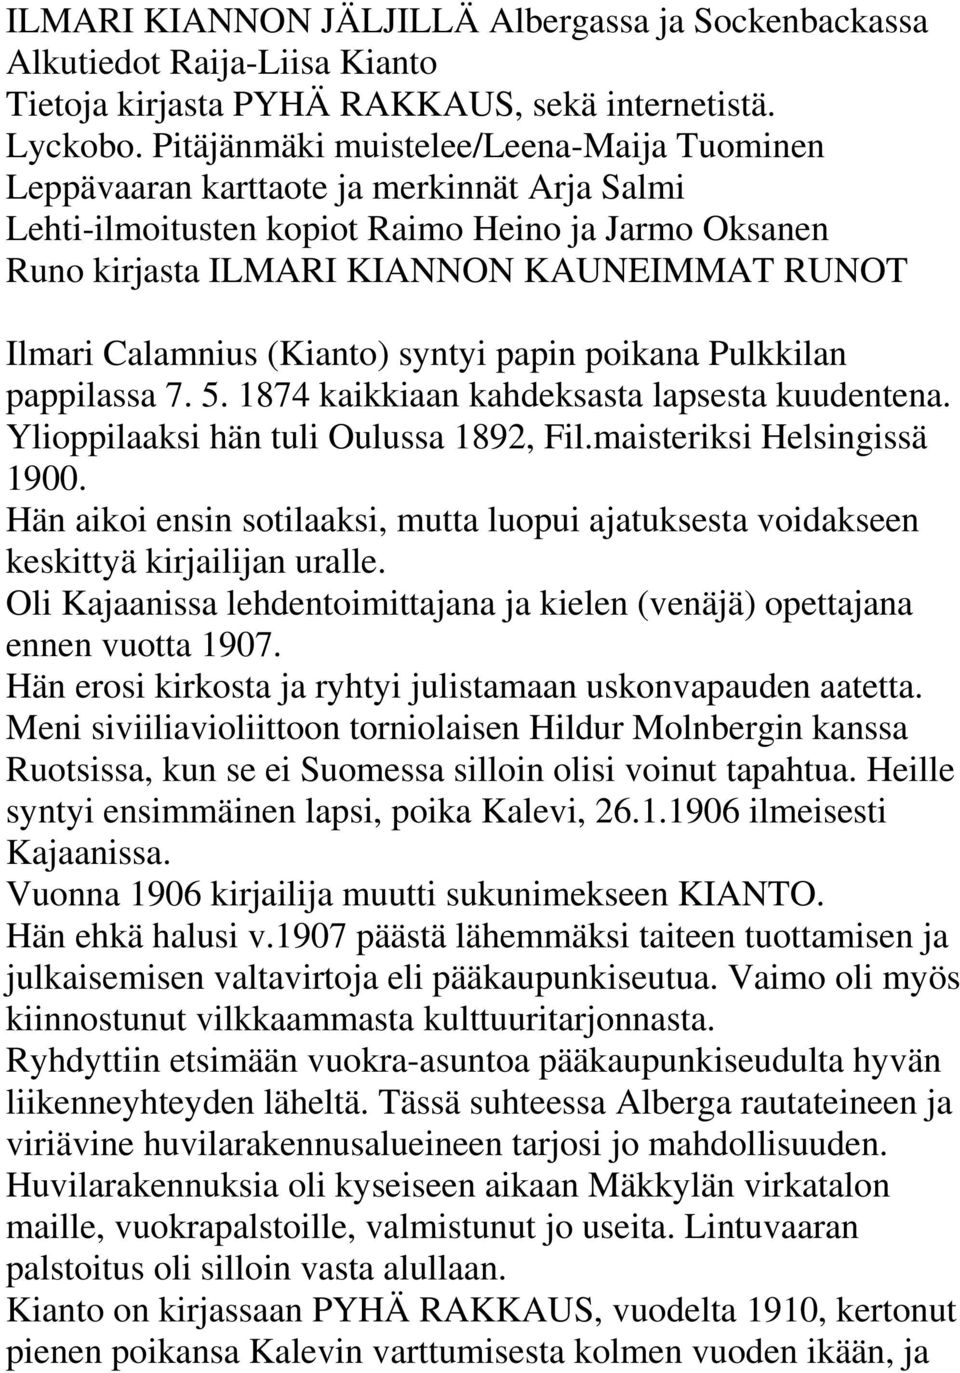 Calamnius (Kianto) syntyi papin poikana Pulkkilan pappilassa 7. 5. 1874 kaikkiaan kahdeksasta lapsesta kuudentena. Ylioppilaaksi hän tuli Oulussa 1892, Fil.maisteriksi Helsingissä 1900.